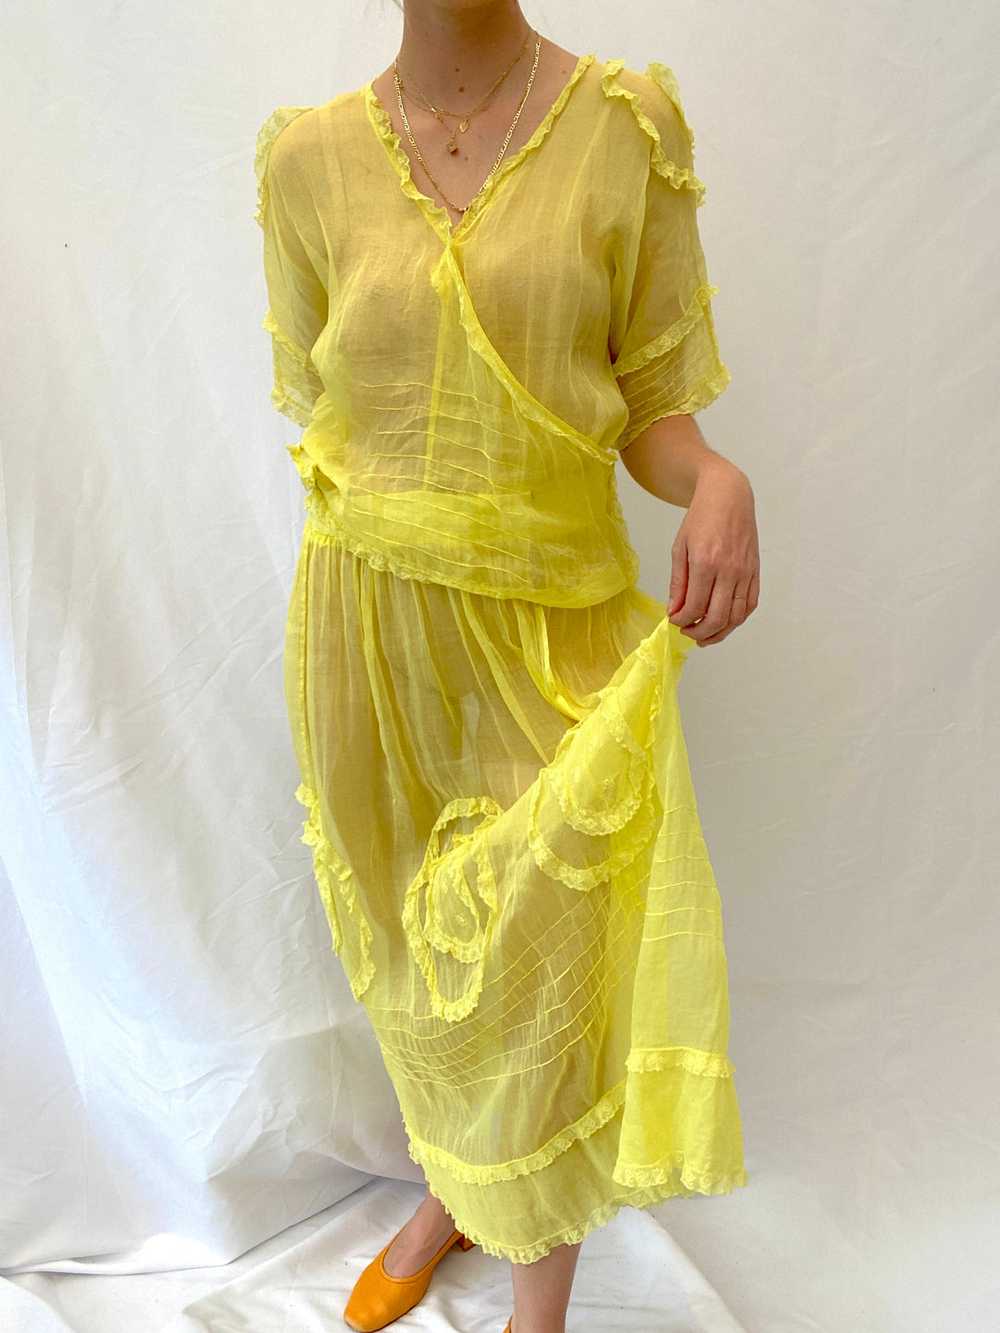 Hand Dyed Yellow Edwardian Organza Dress - image 4